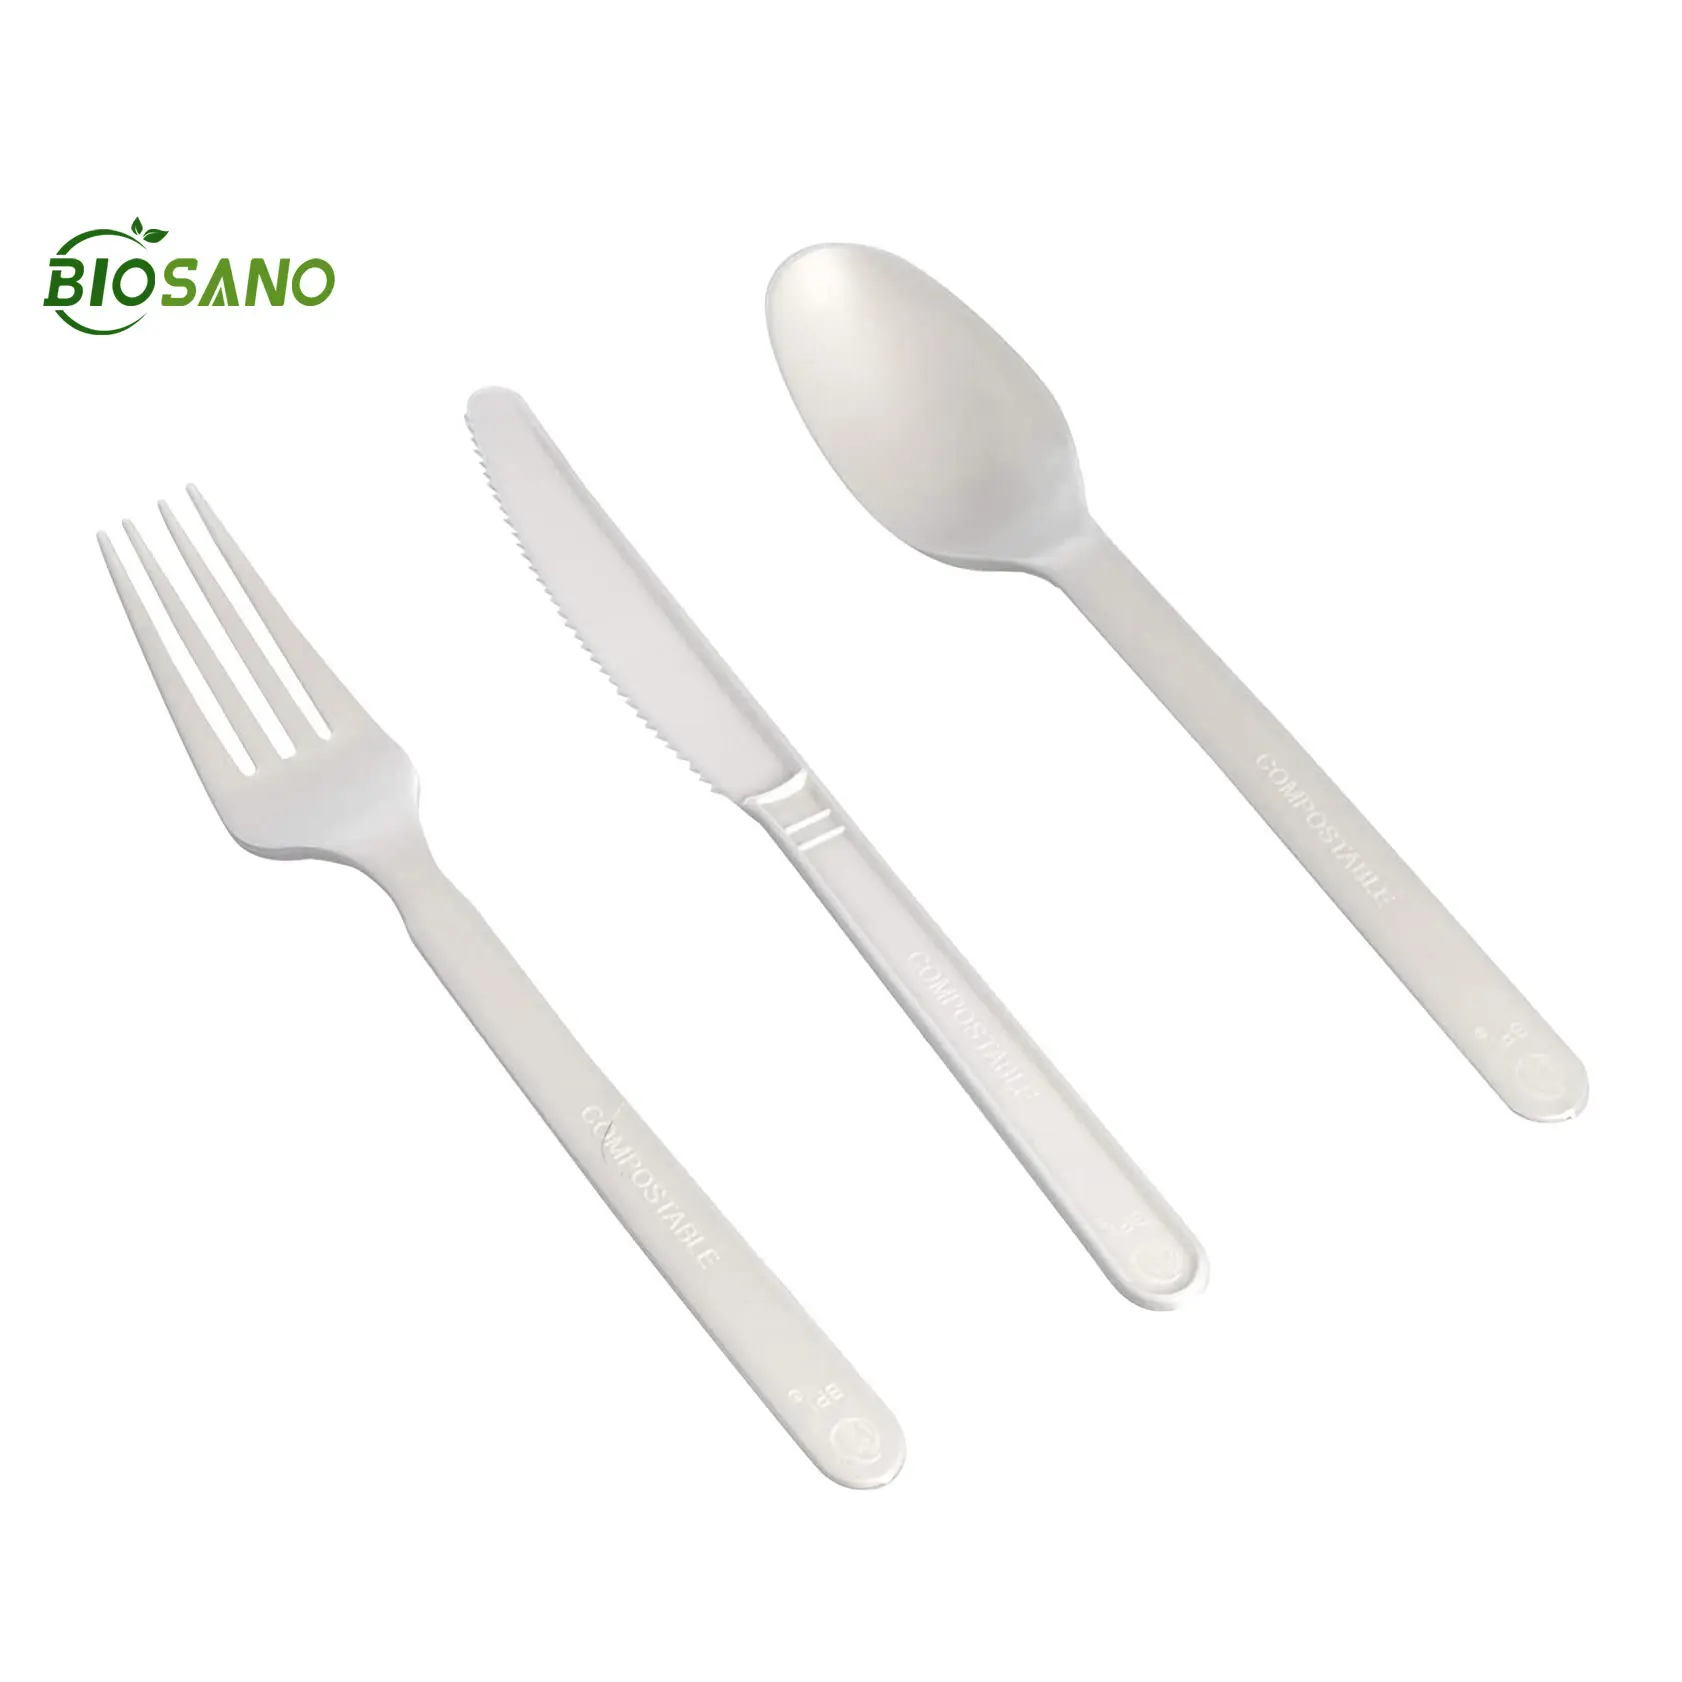 Biosano biodegradable cpla निपटान प्लास्टिक डिस्पोजेबल मिनी शादी प्लेट आइस क्रीम चम्मच कांटा बर्तन और tableware सेट